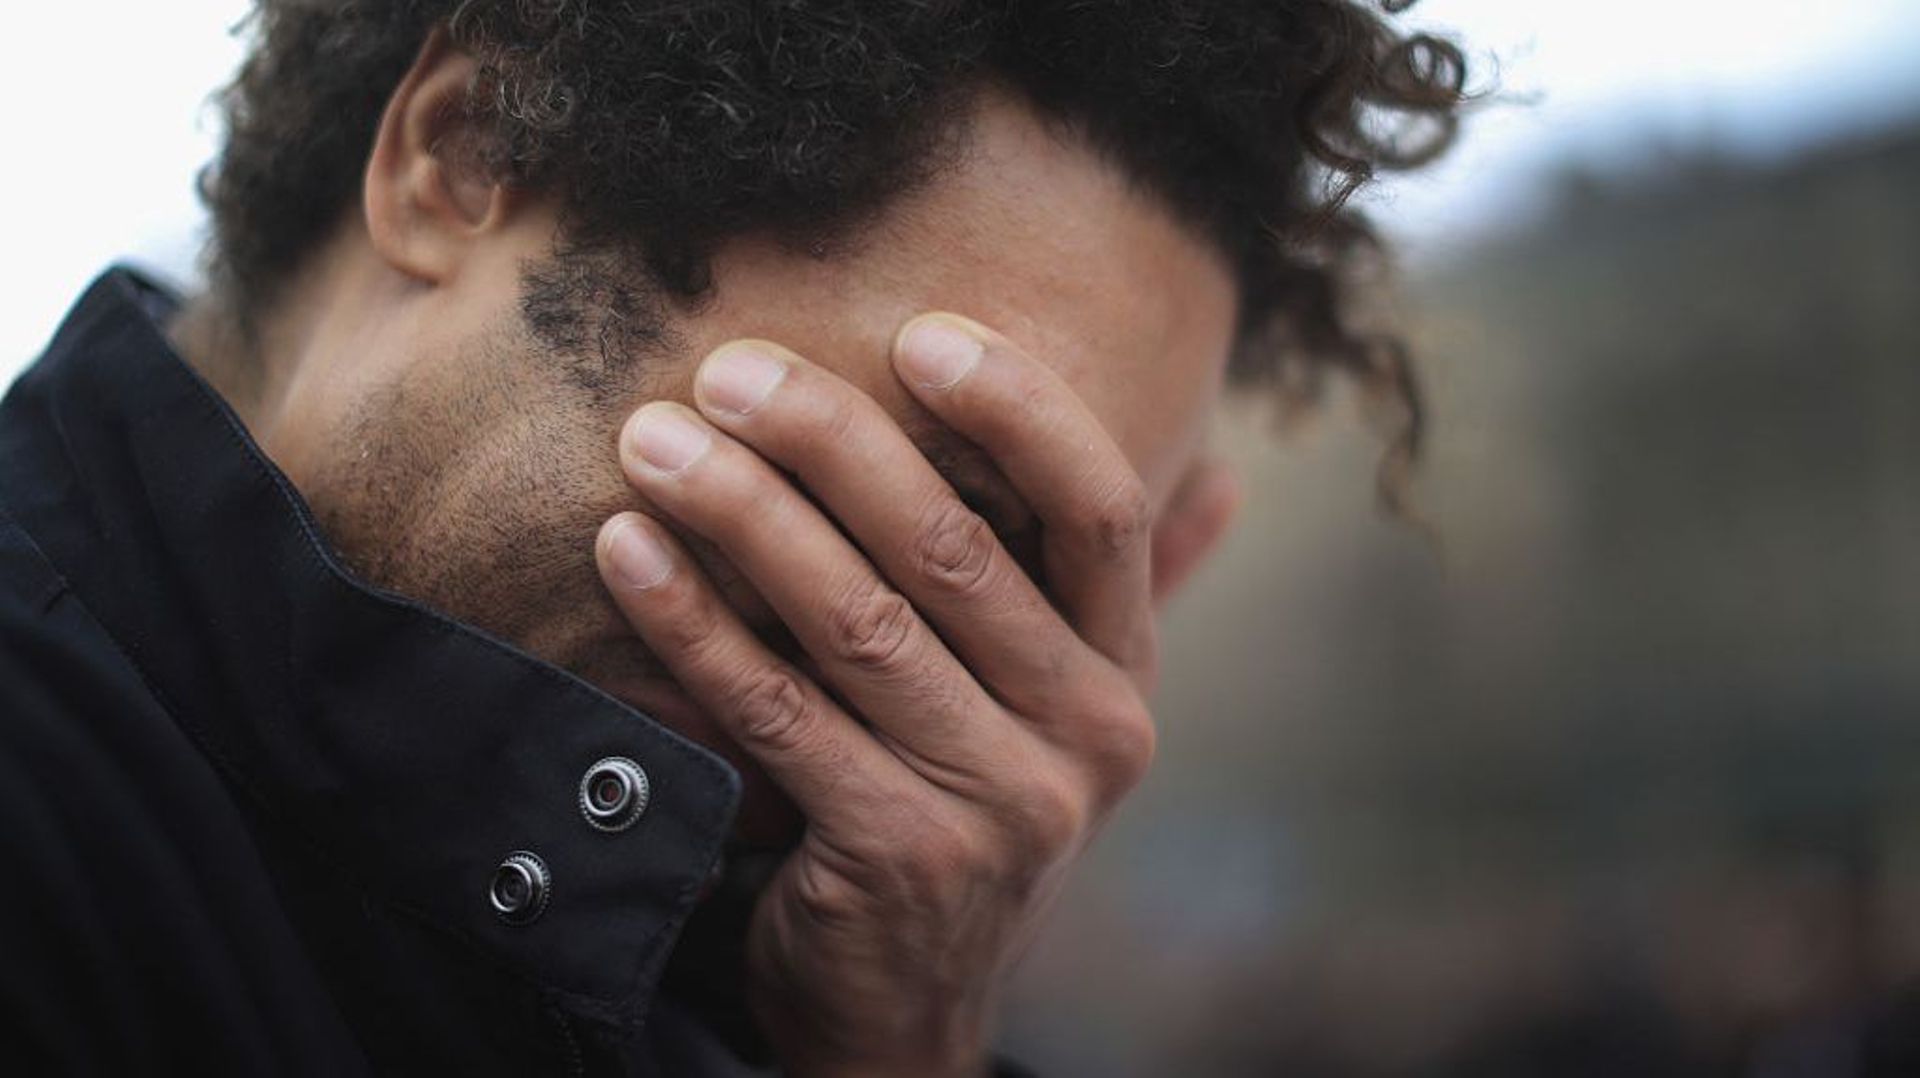 Déconstruire les masculinités toxiques: "Sois fort, ne pleure pas"